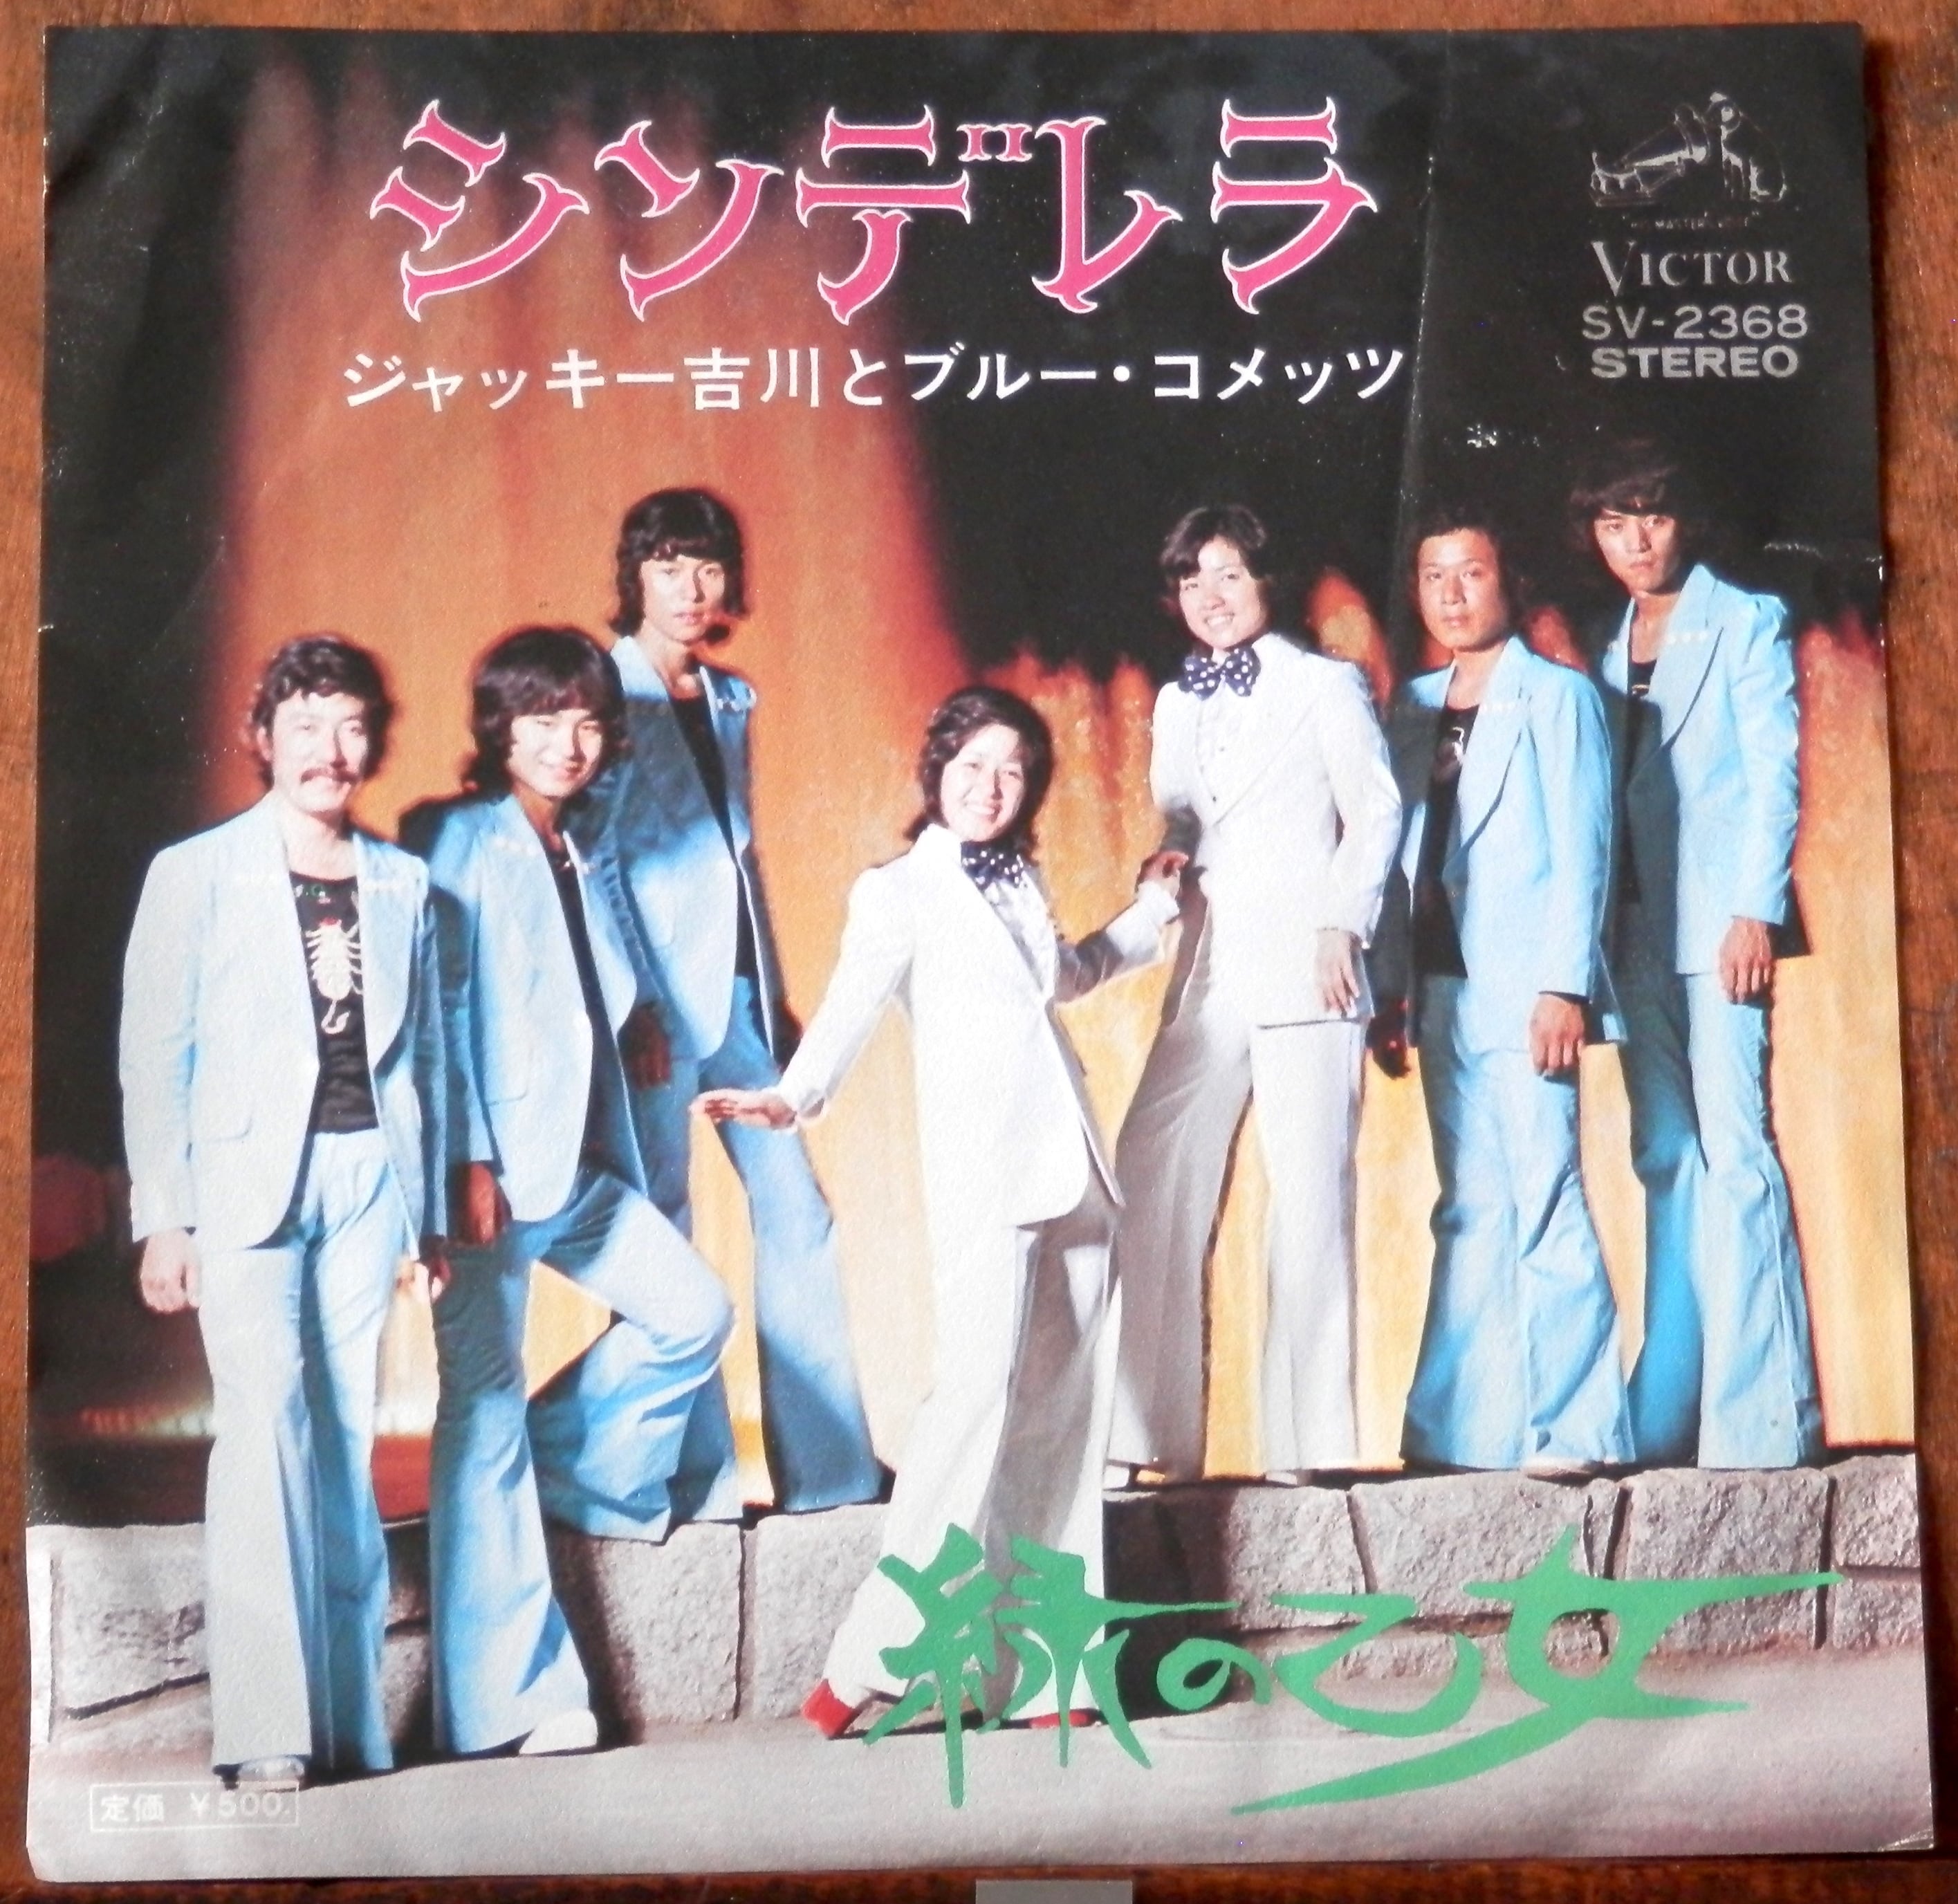 73【EP】ジャッキー吉川とブルーコメッツ シンデレラ 音盤窟レコード